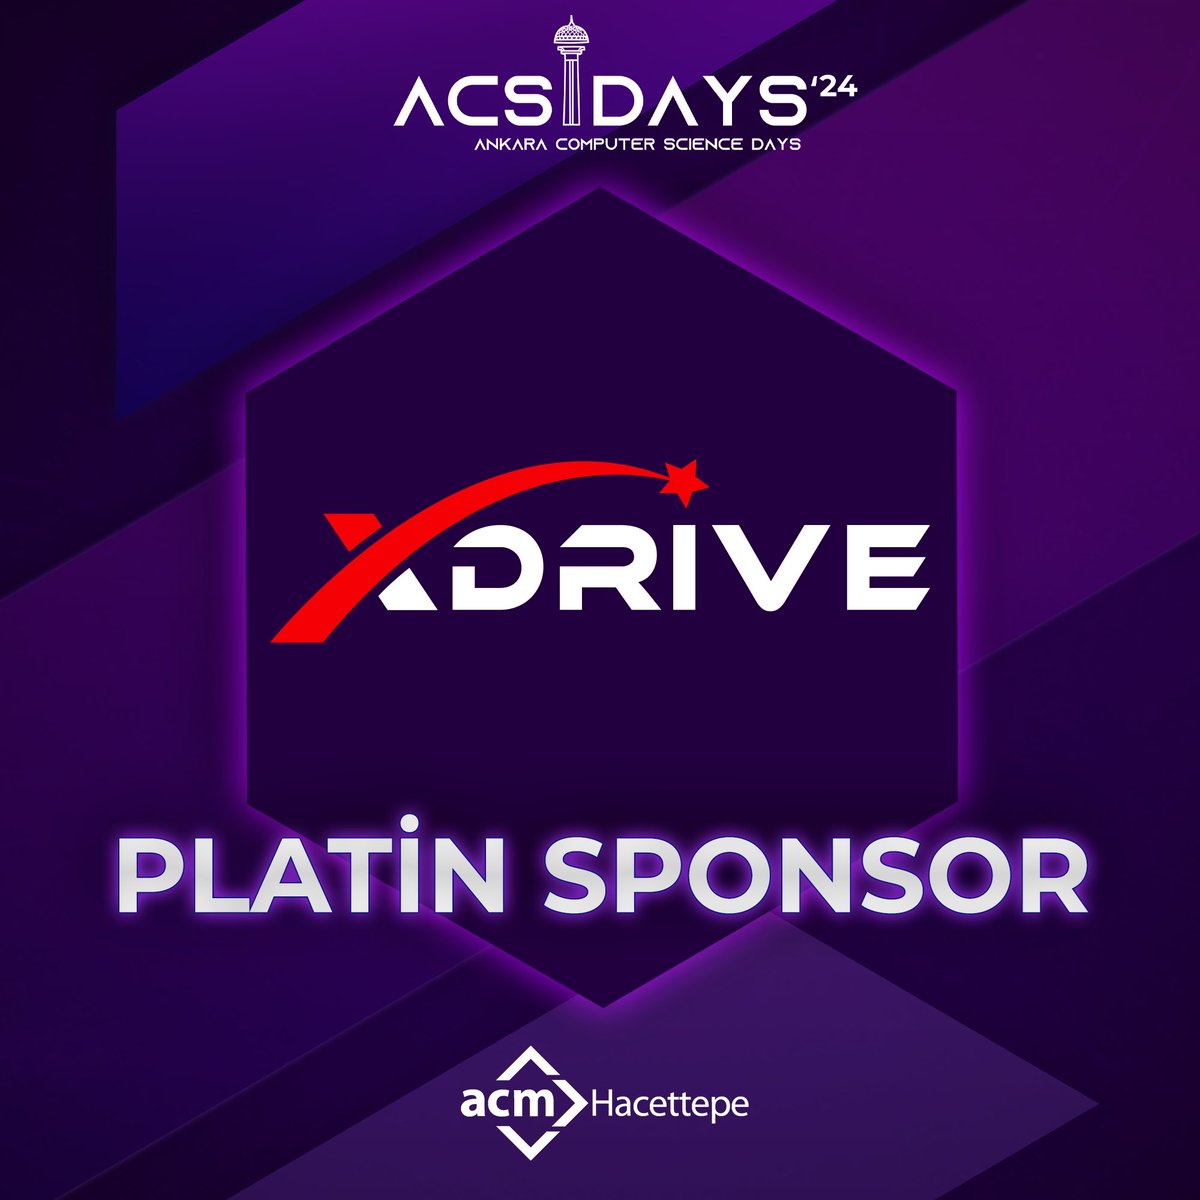 Sektörün yıldızlarının buluştuğu ACSDAYS’24 etkinliğimizin Platin Sponsoru xDrive!

Platin Sponsorumuza tüm destekleri için çok teşekkür ediyoruz! 

29-30 Nisan’da davetlisiniz!